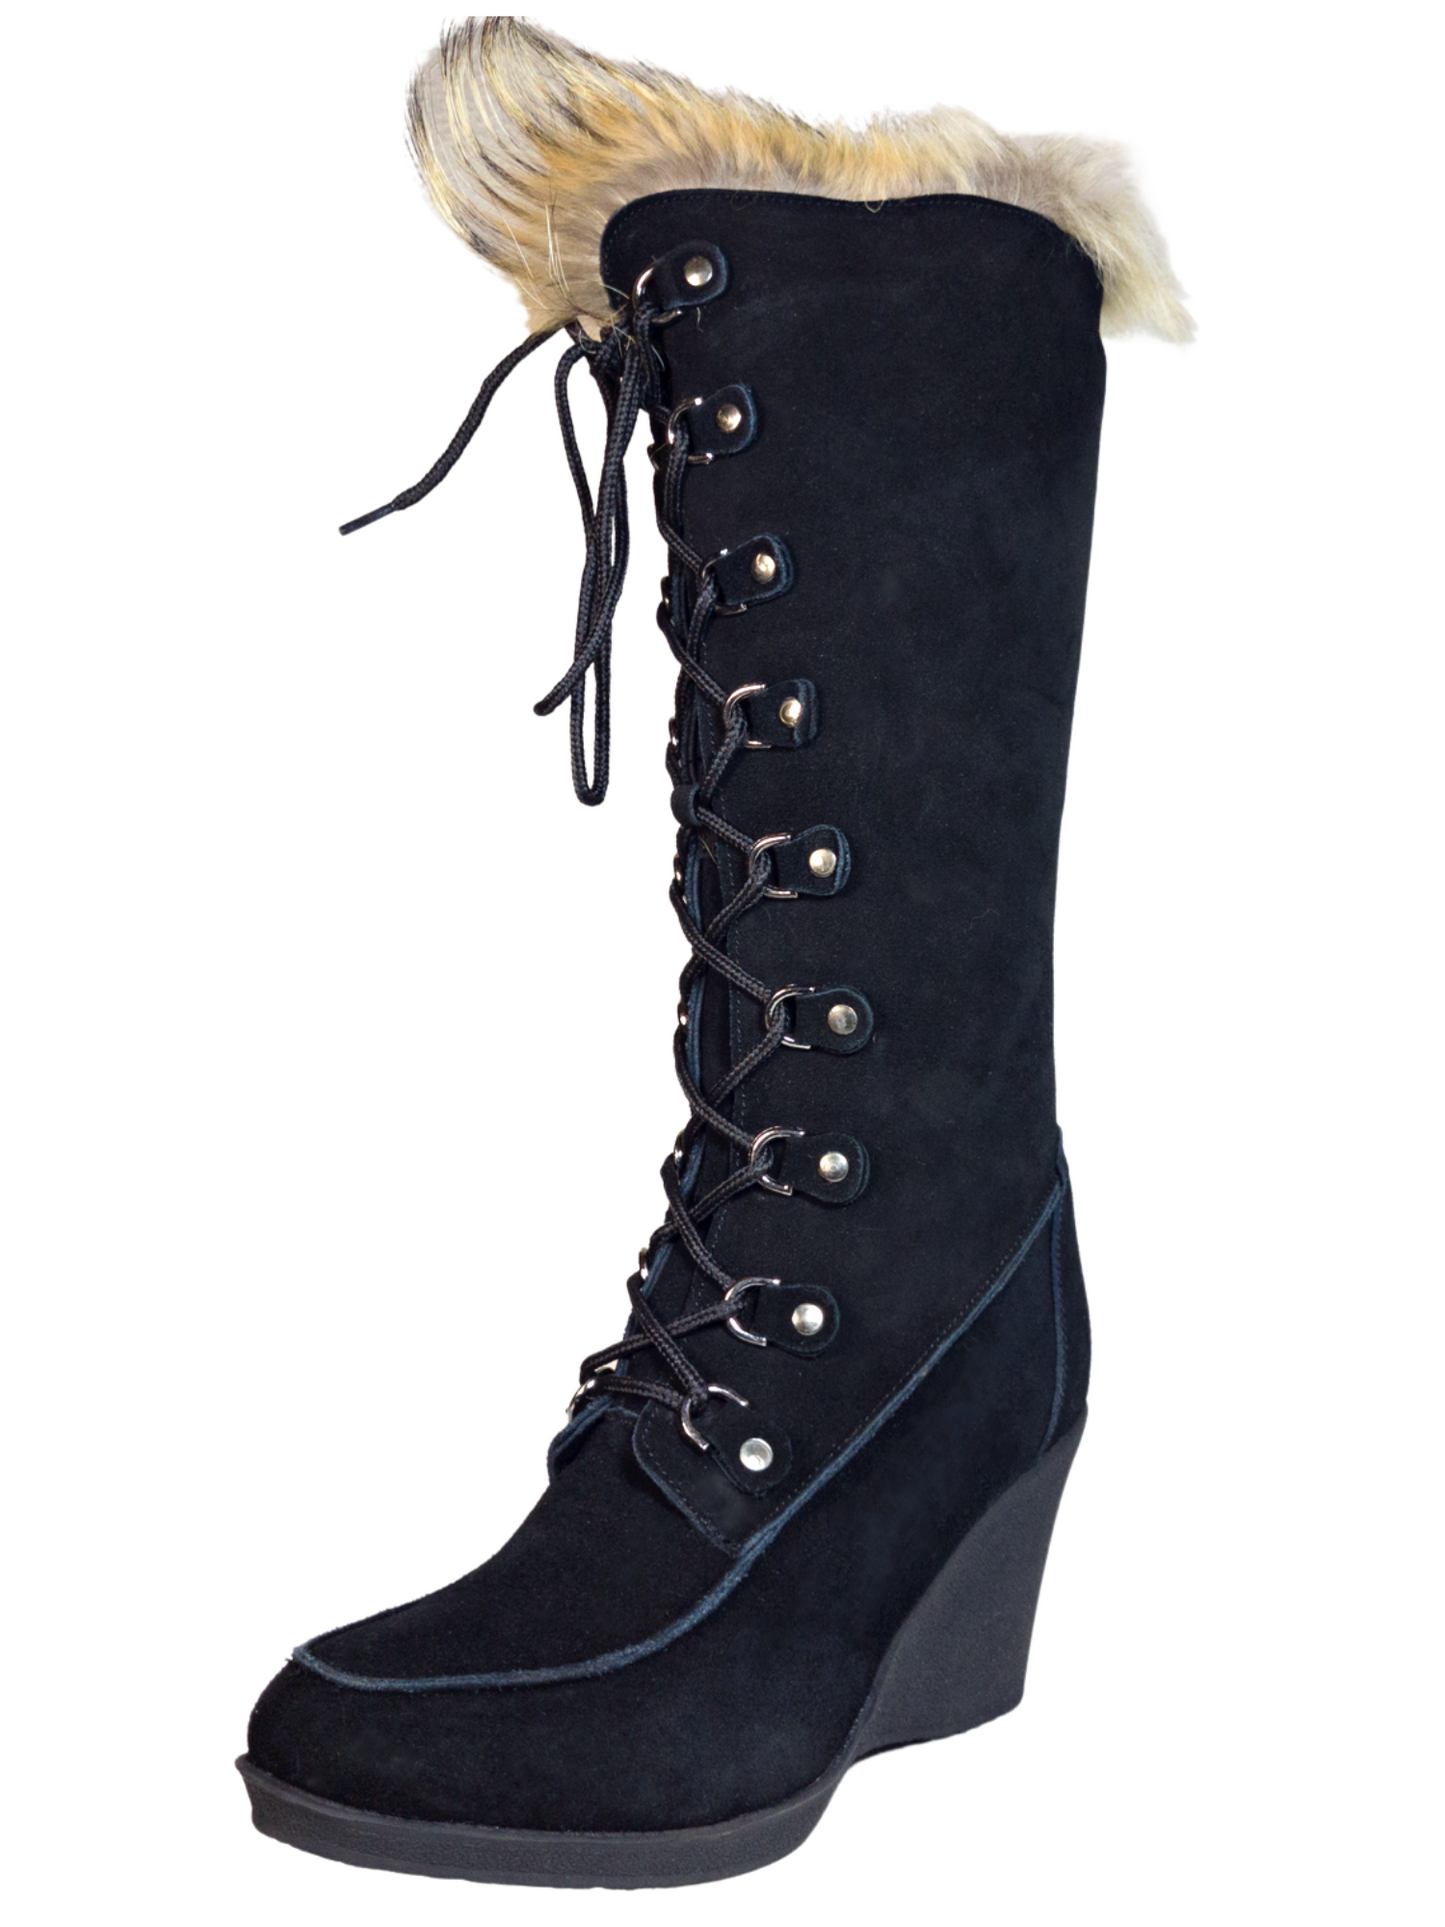 Botas de Invierno de Cuña de Piel Gamuza/Pelo de Zorro para Mujer 'Bearpaw' - ID: 7133 Winter Boots Bearpaw Negro